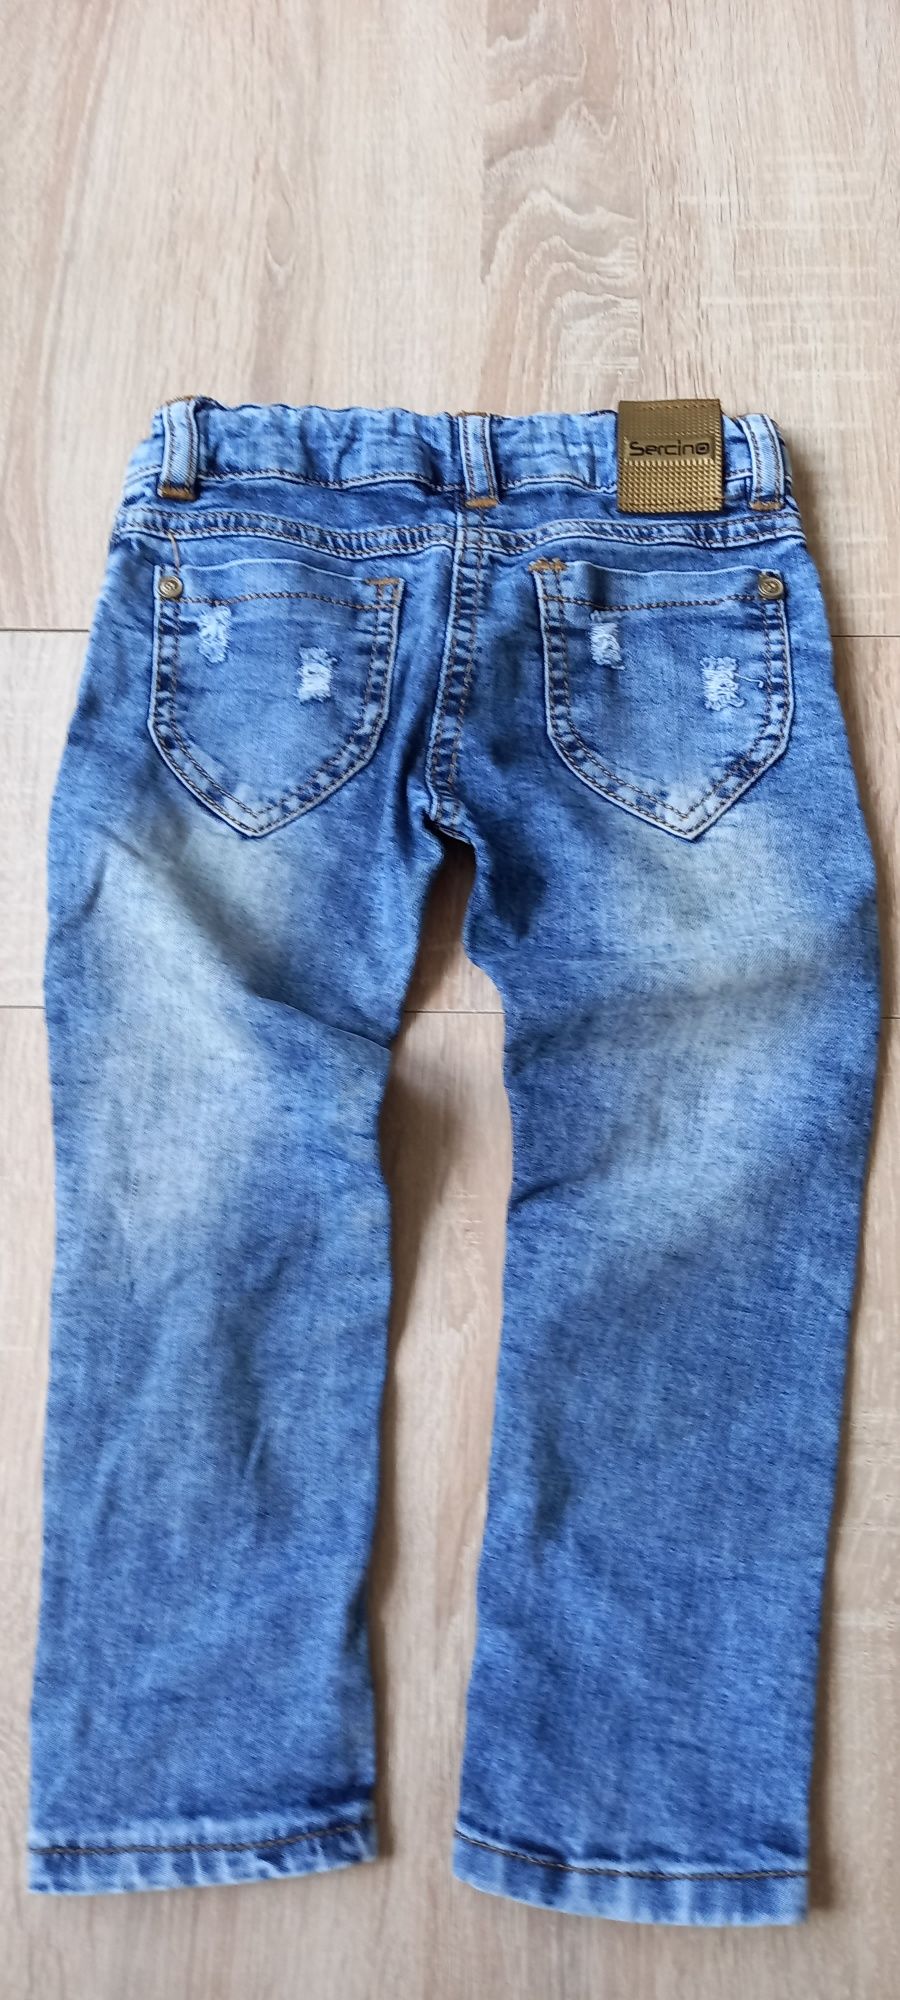 Продам пакет джинсових речей на дівчинку від 1,5 до 3 років